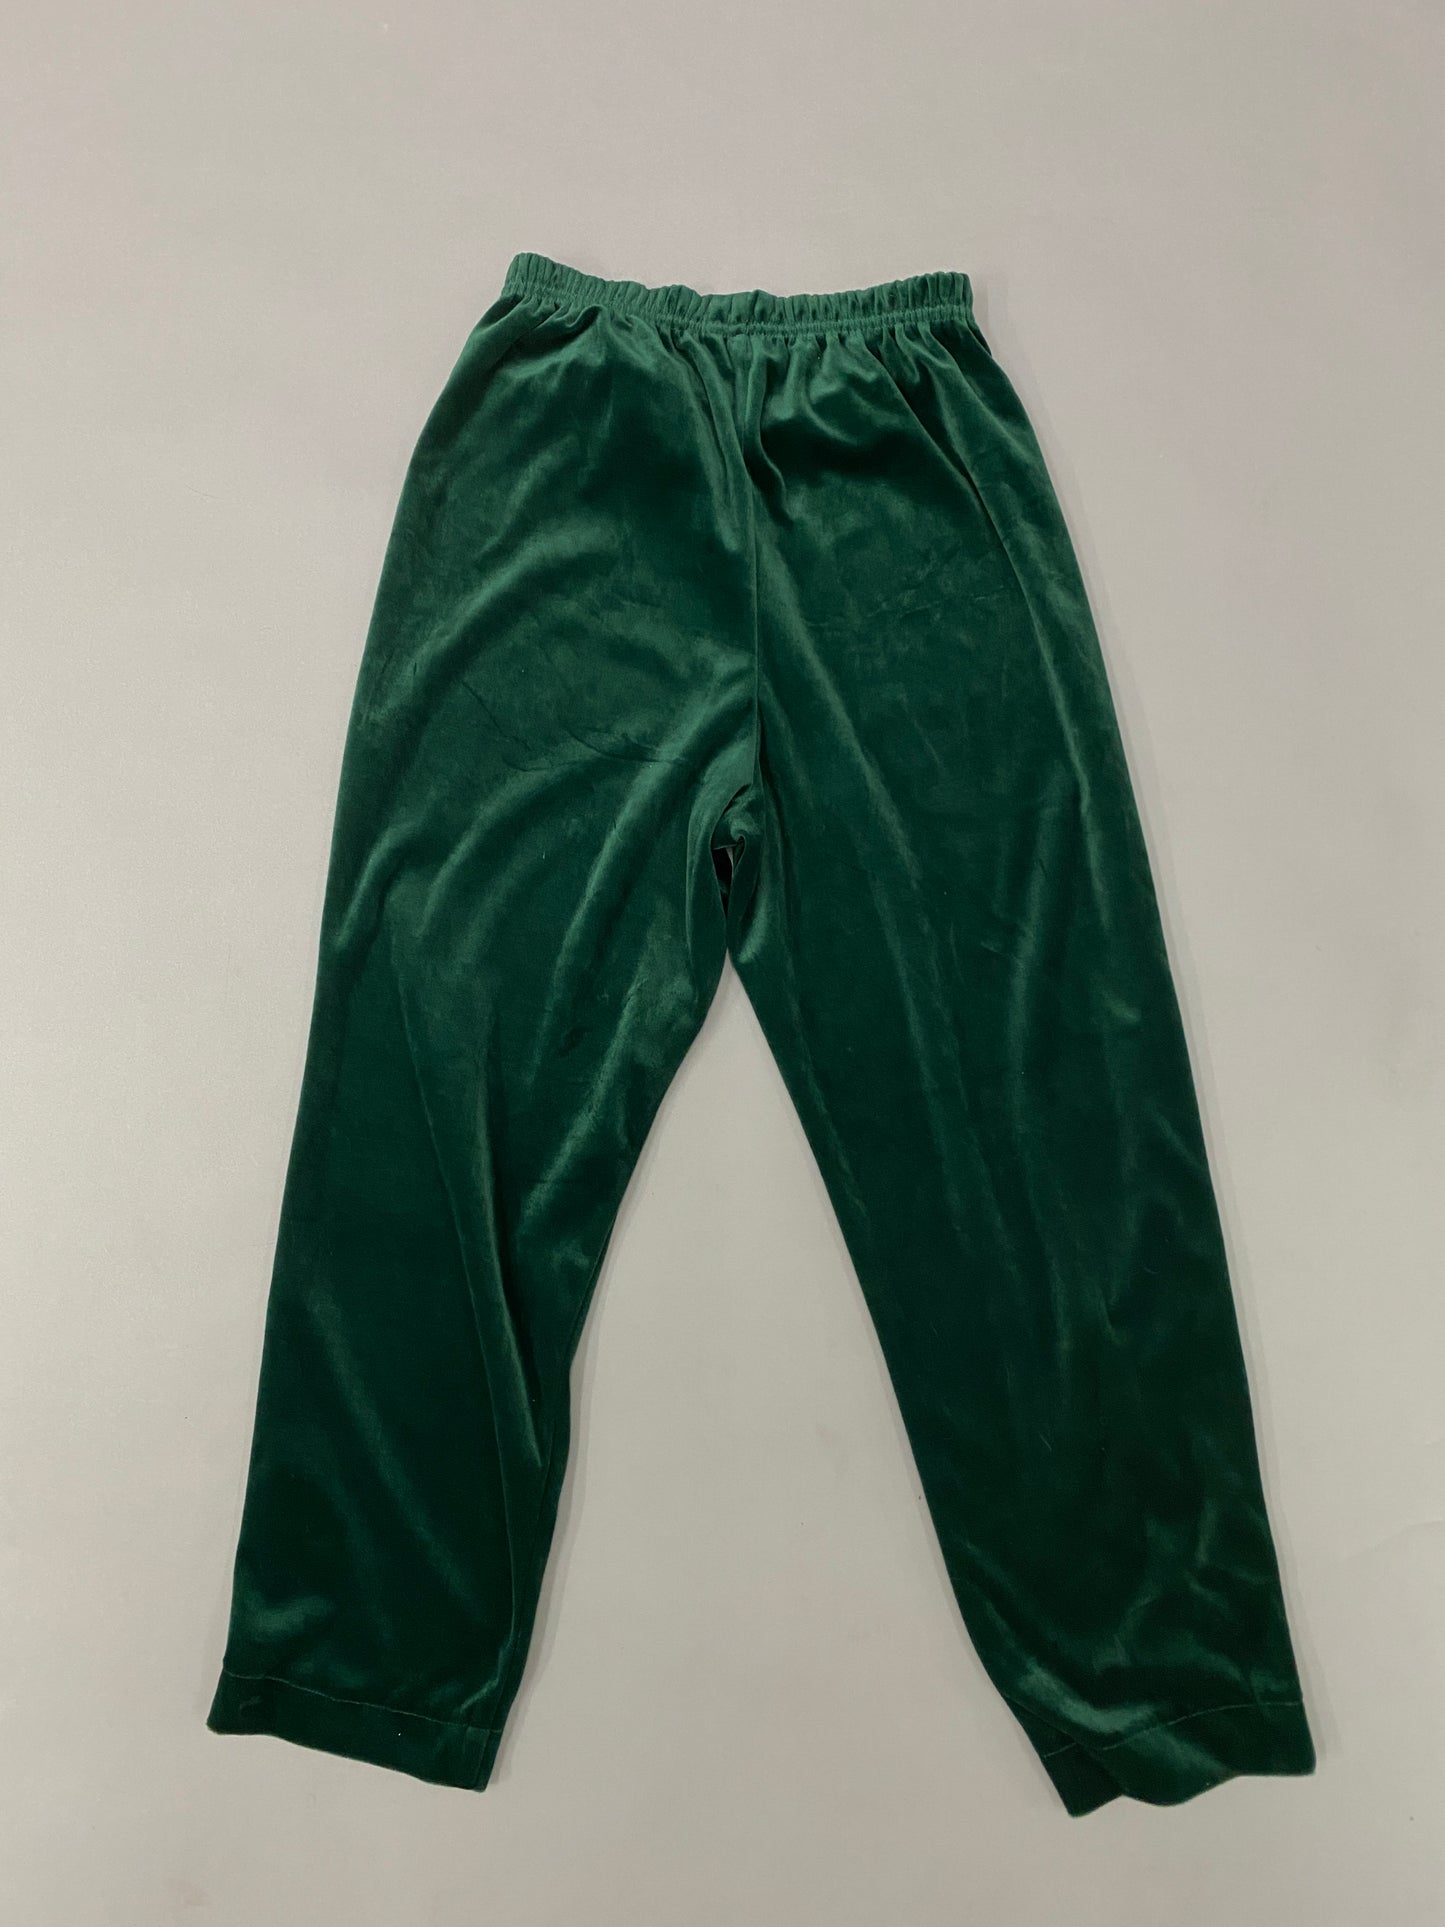 Vintage Green Velvet Pants - Sz S